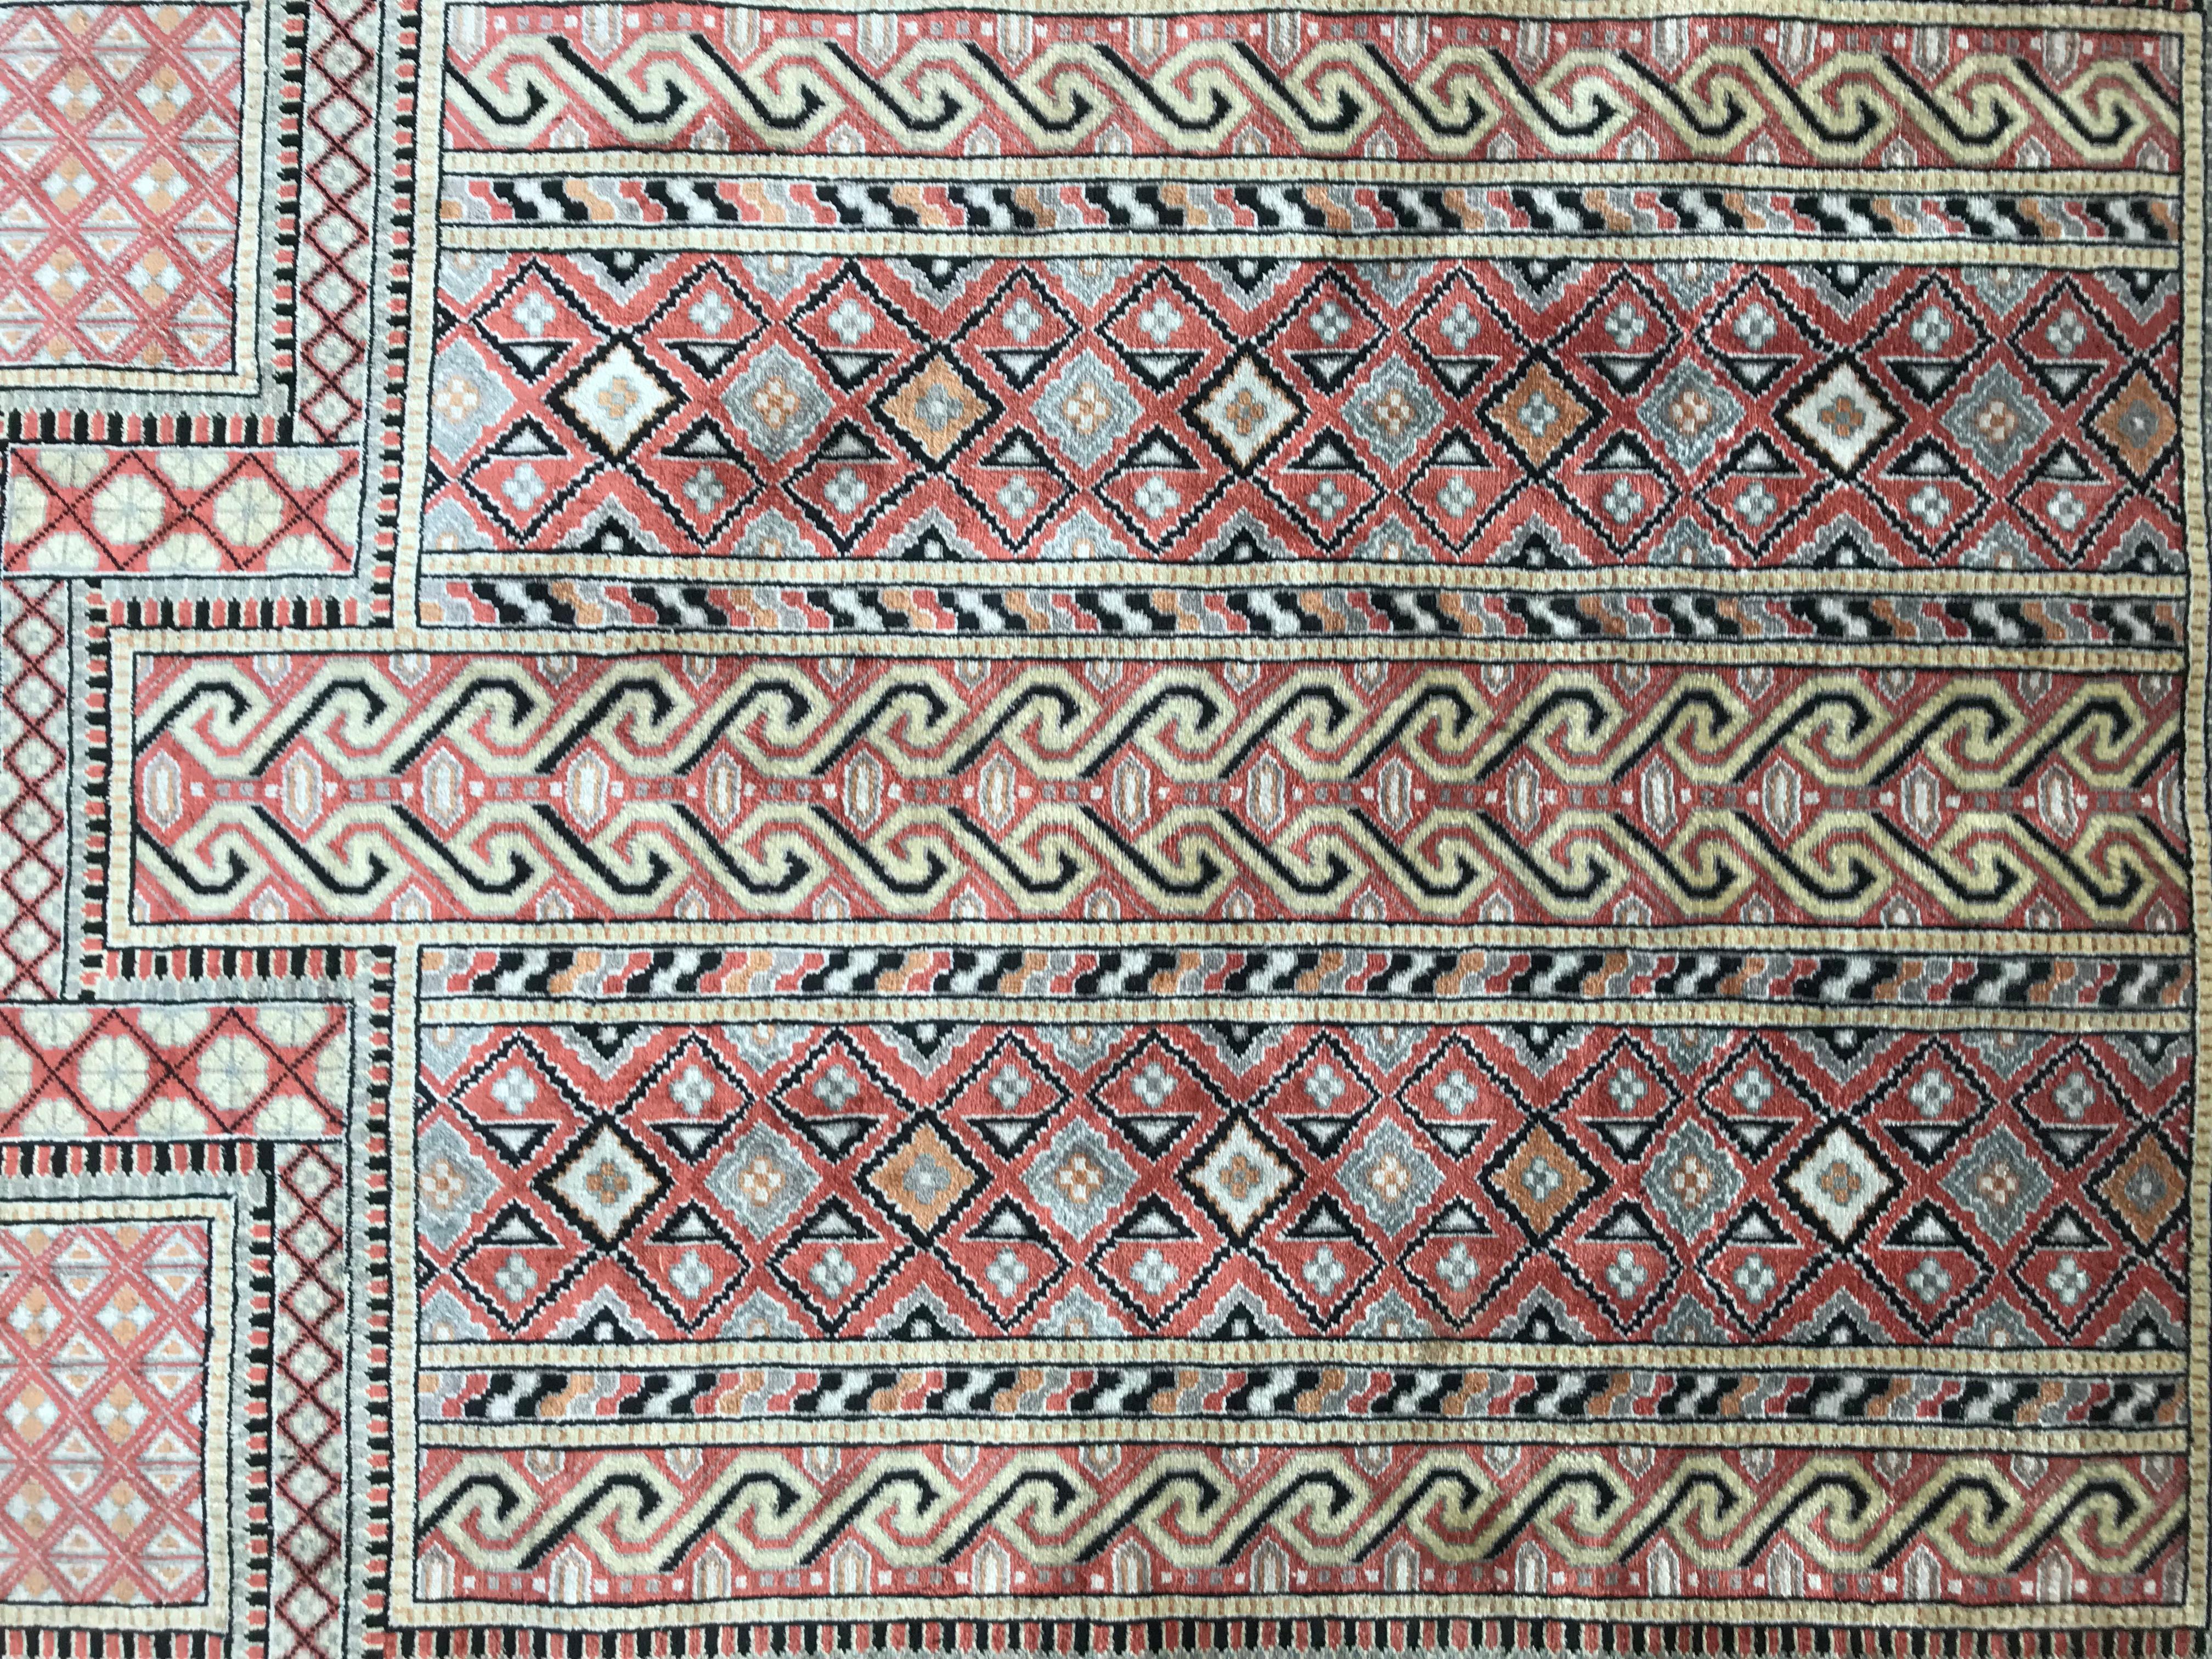 Joli petit tapis turc en soie, avec un beau dessin géométrique avec mihrab et de belles couleurs avec du beige, rose, jaune et noir, finement noué à la main avec du velours de soie sur une base de soie. Taille : 2ft 0.02inch x 2ft 11.44inch.